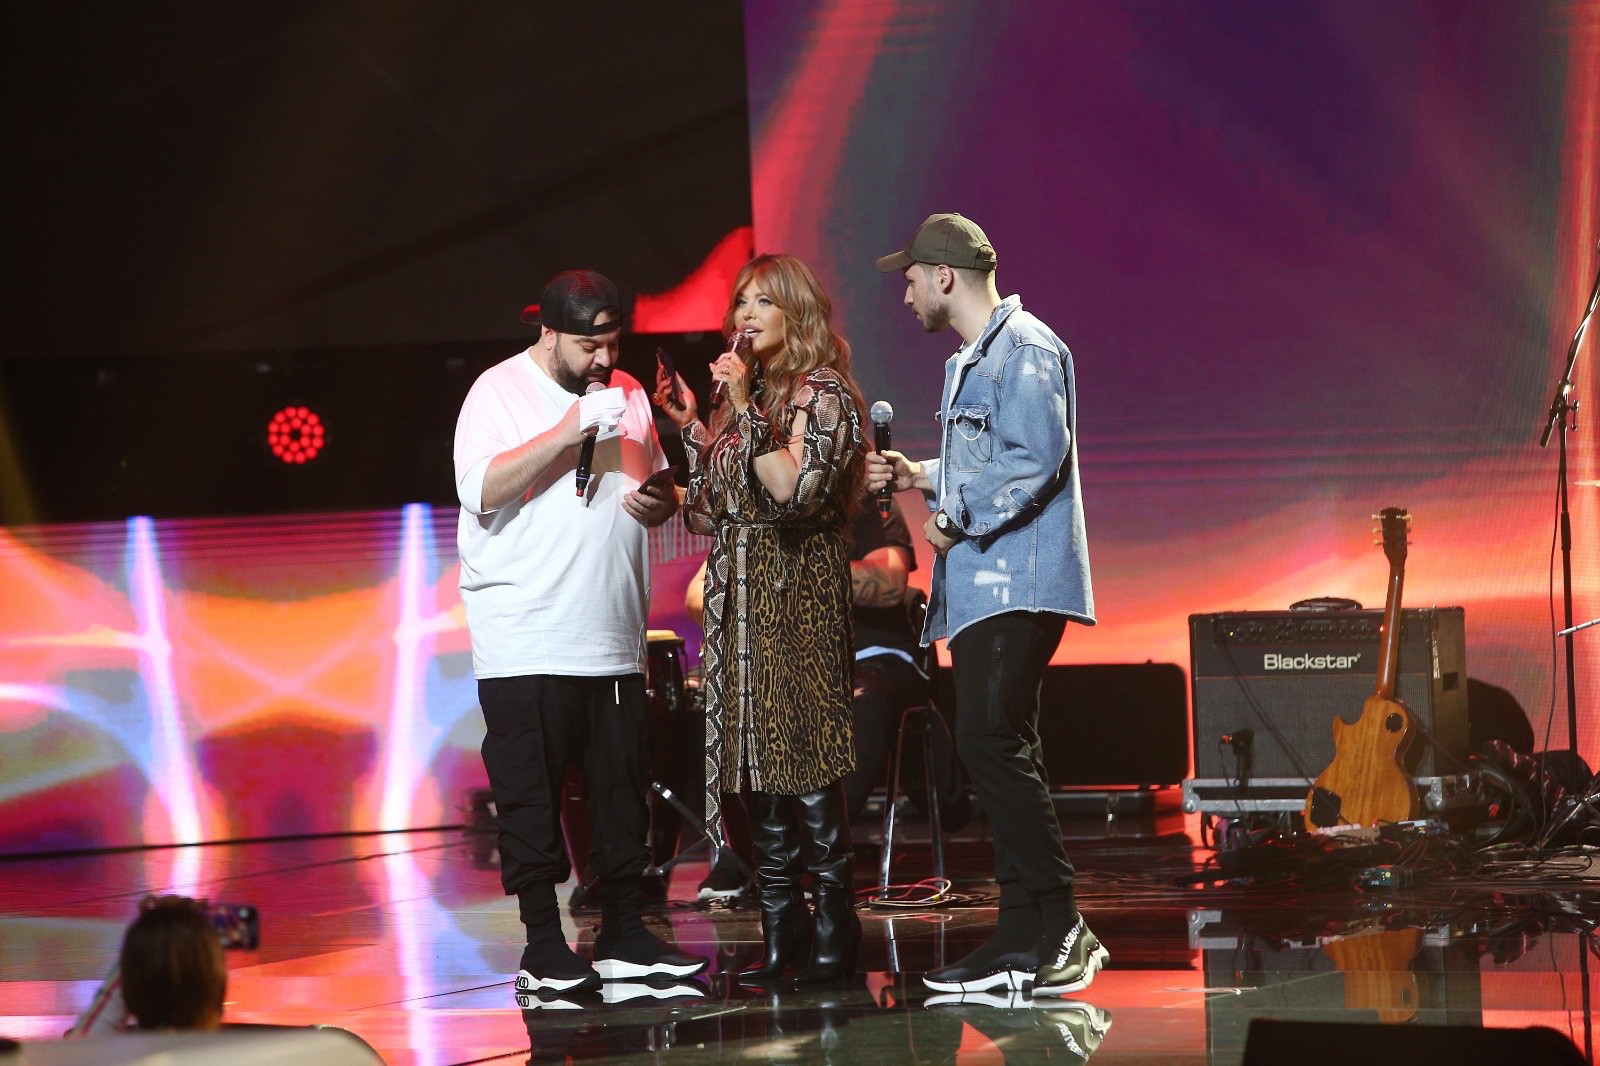 Ultimele repetiții alături de invitații speciali înainte de marea finală X Factor de vineri, de la 20.00, la Antena 1: ”Am emoții de parcă m-am apucat acum de cântat!”